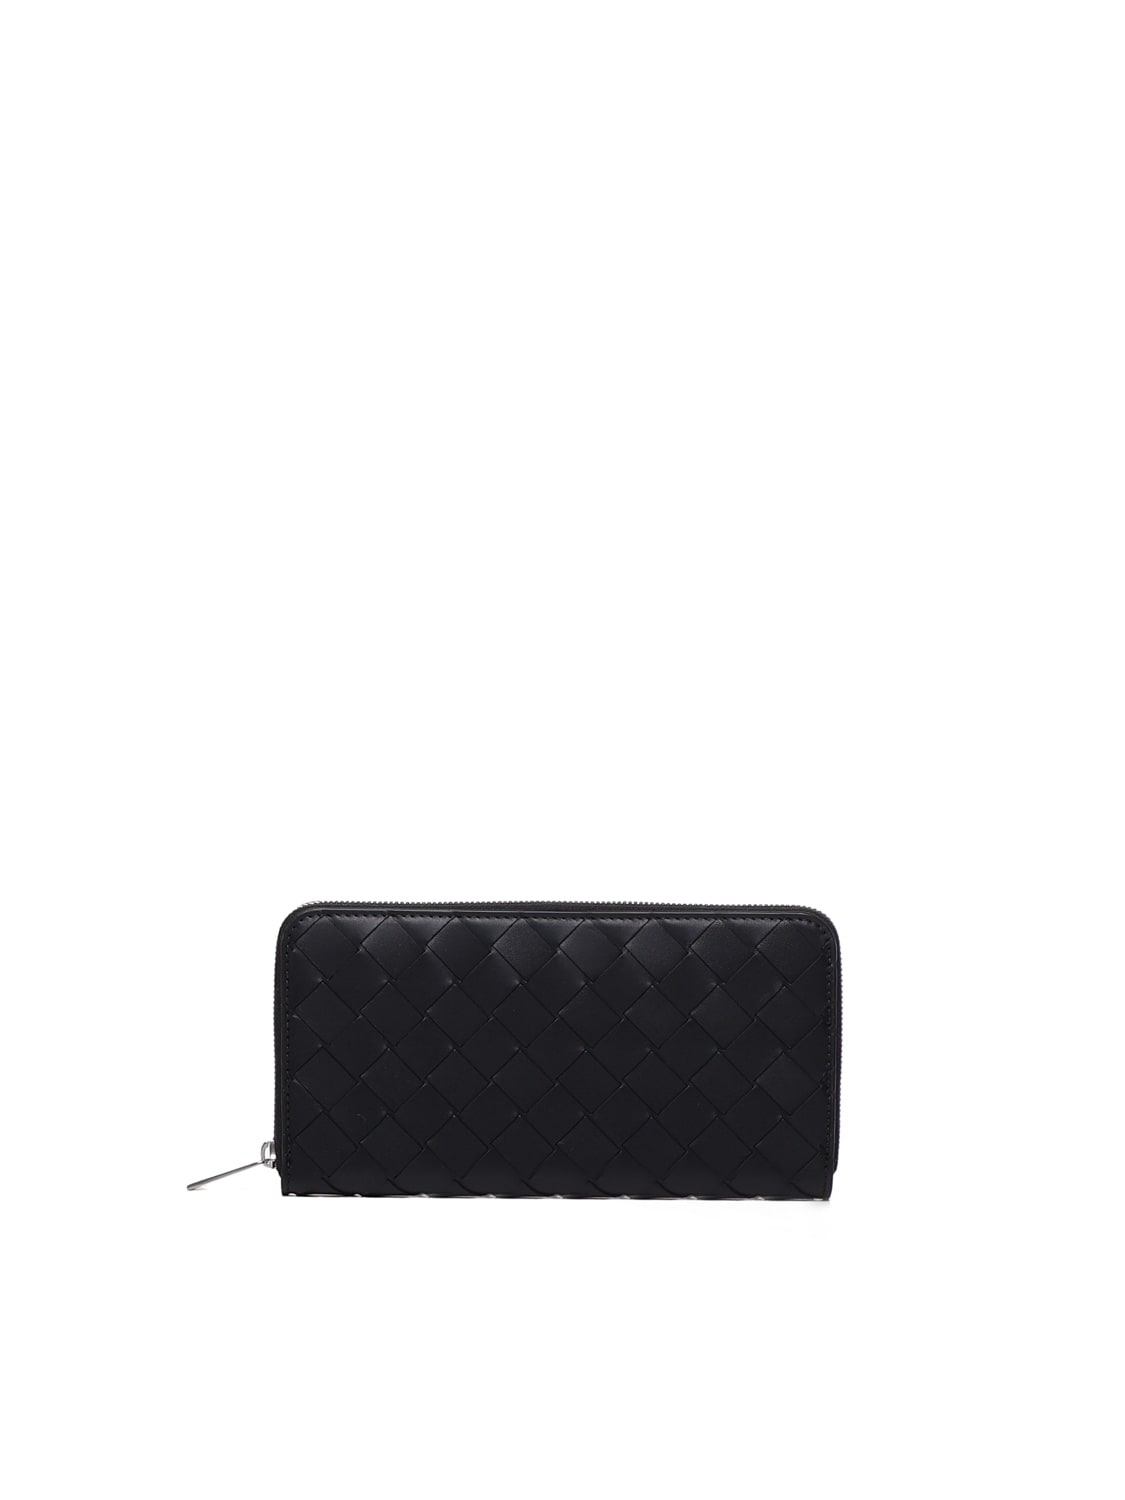 Bottega Veneta Intrecciato Zipped Wallet In Black